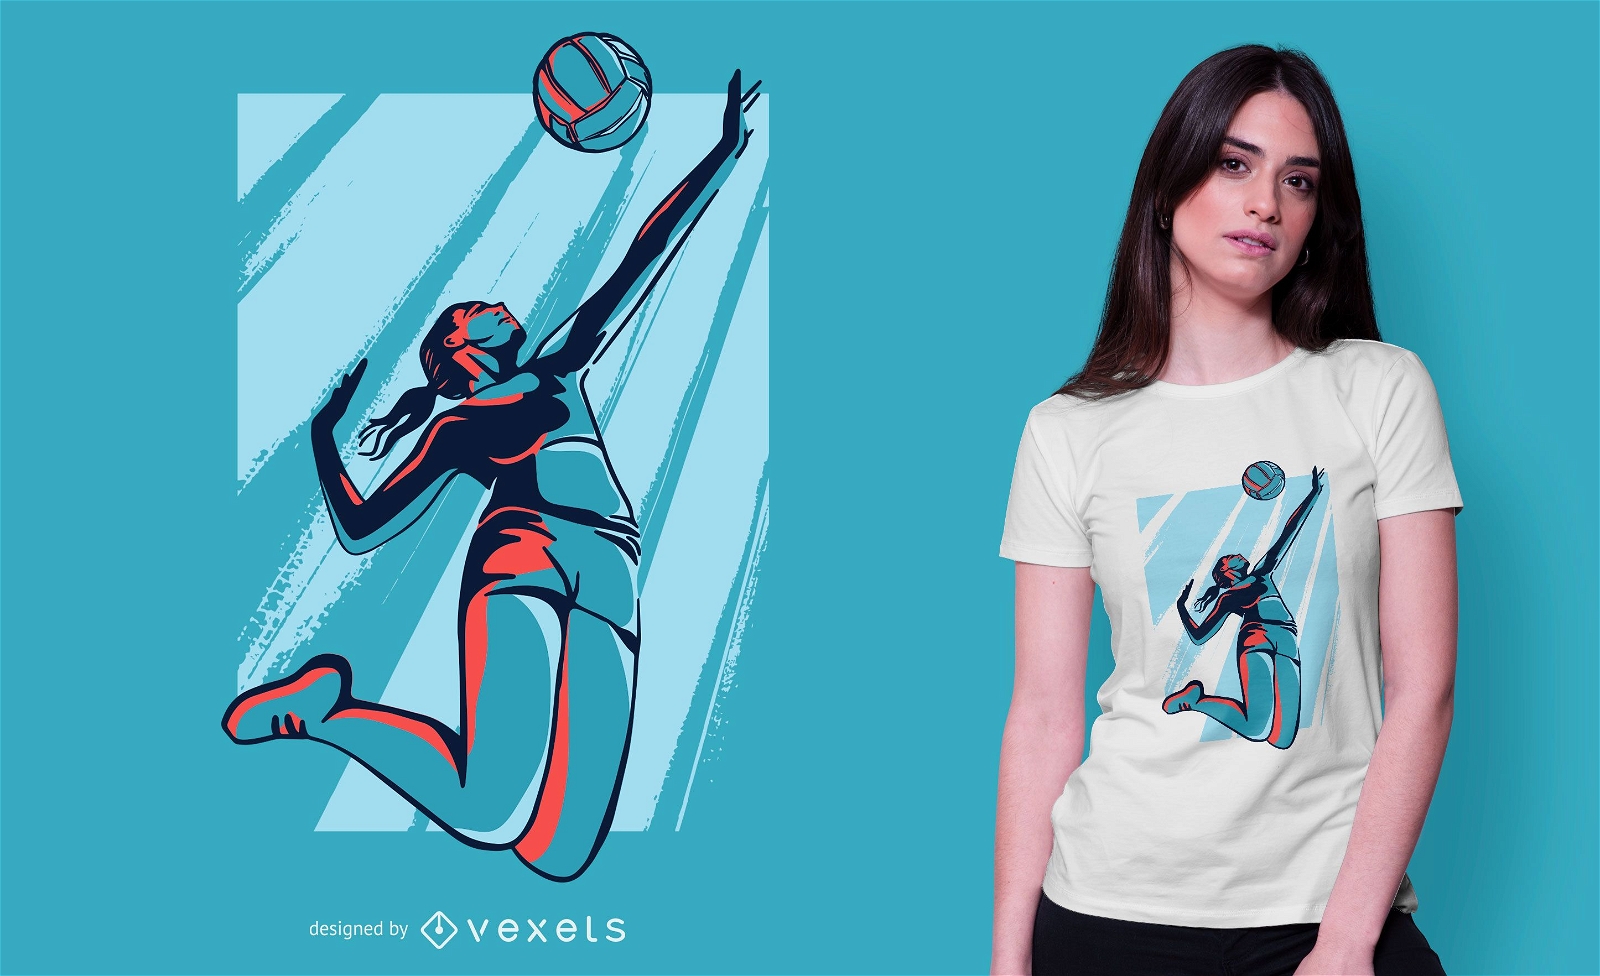 sencillo Cuerda Restricciones Descarga Vector De Diseño De Camiseta De Jugador De Voleibol Femenino.